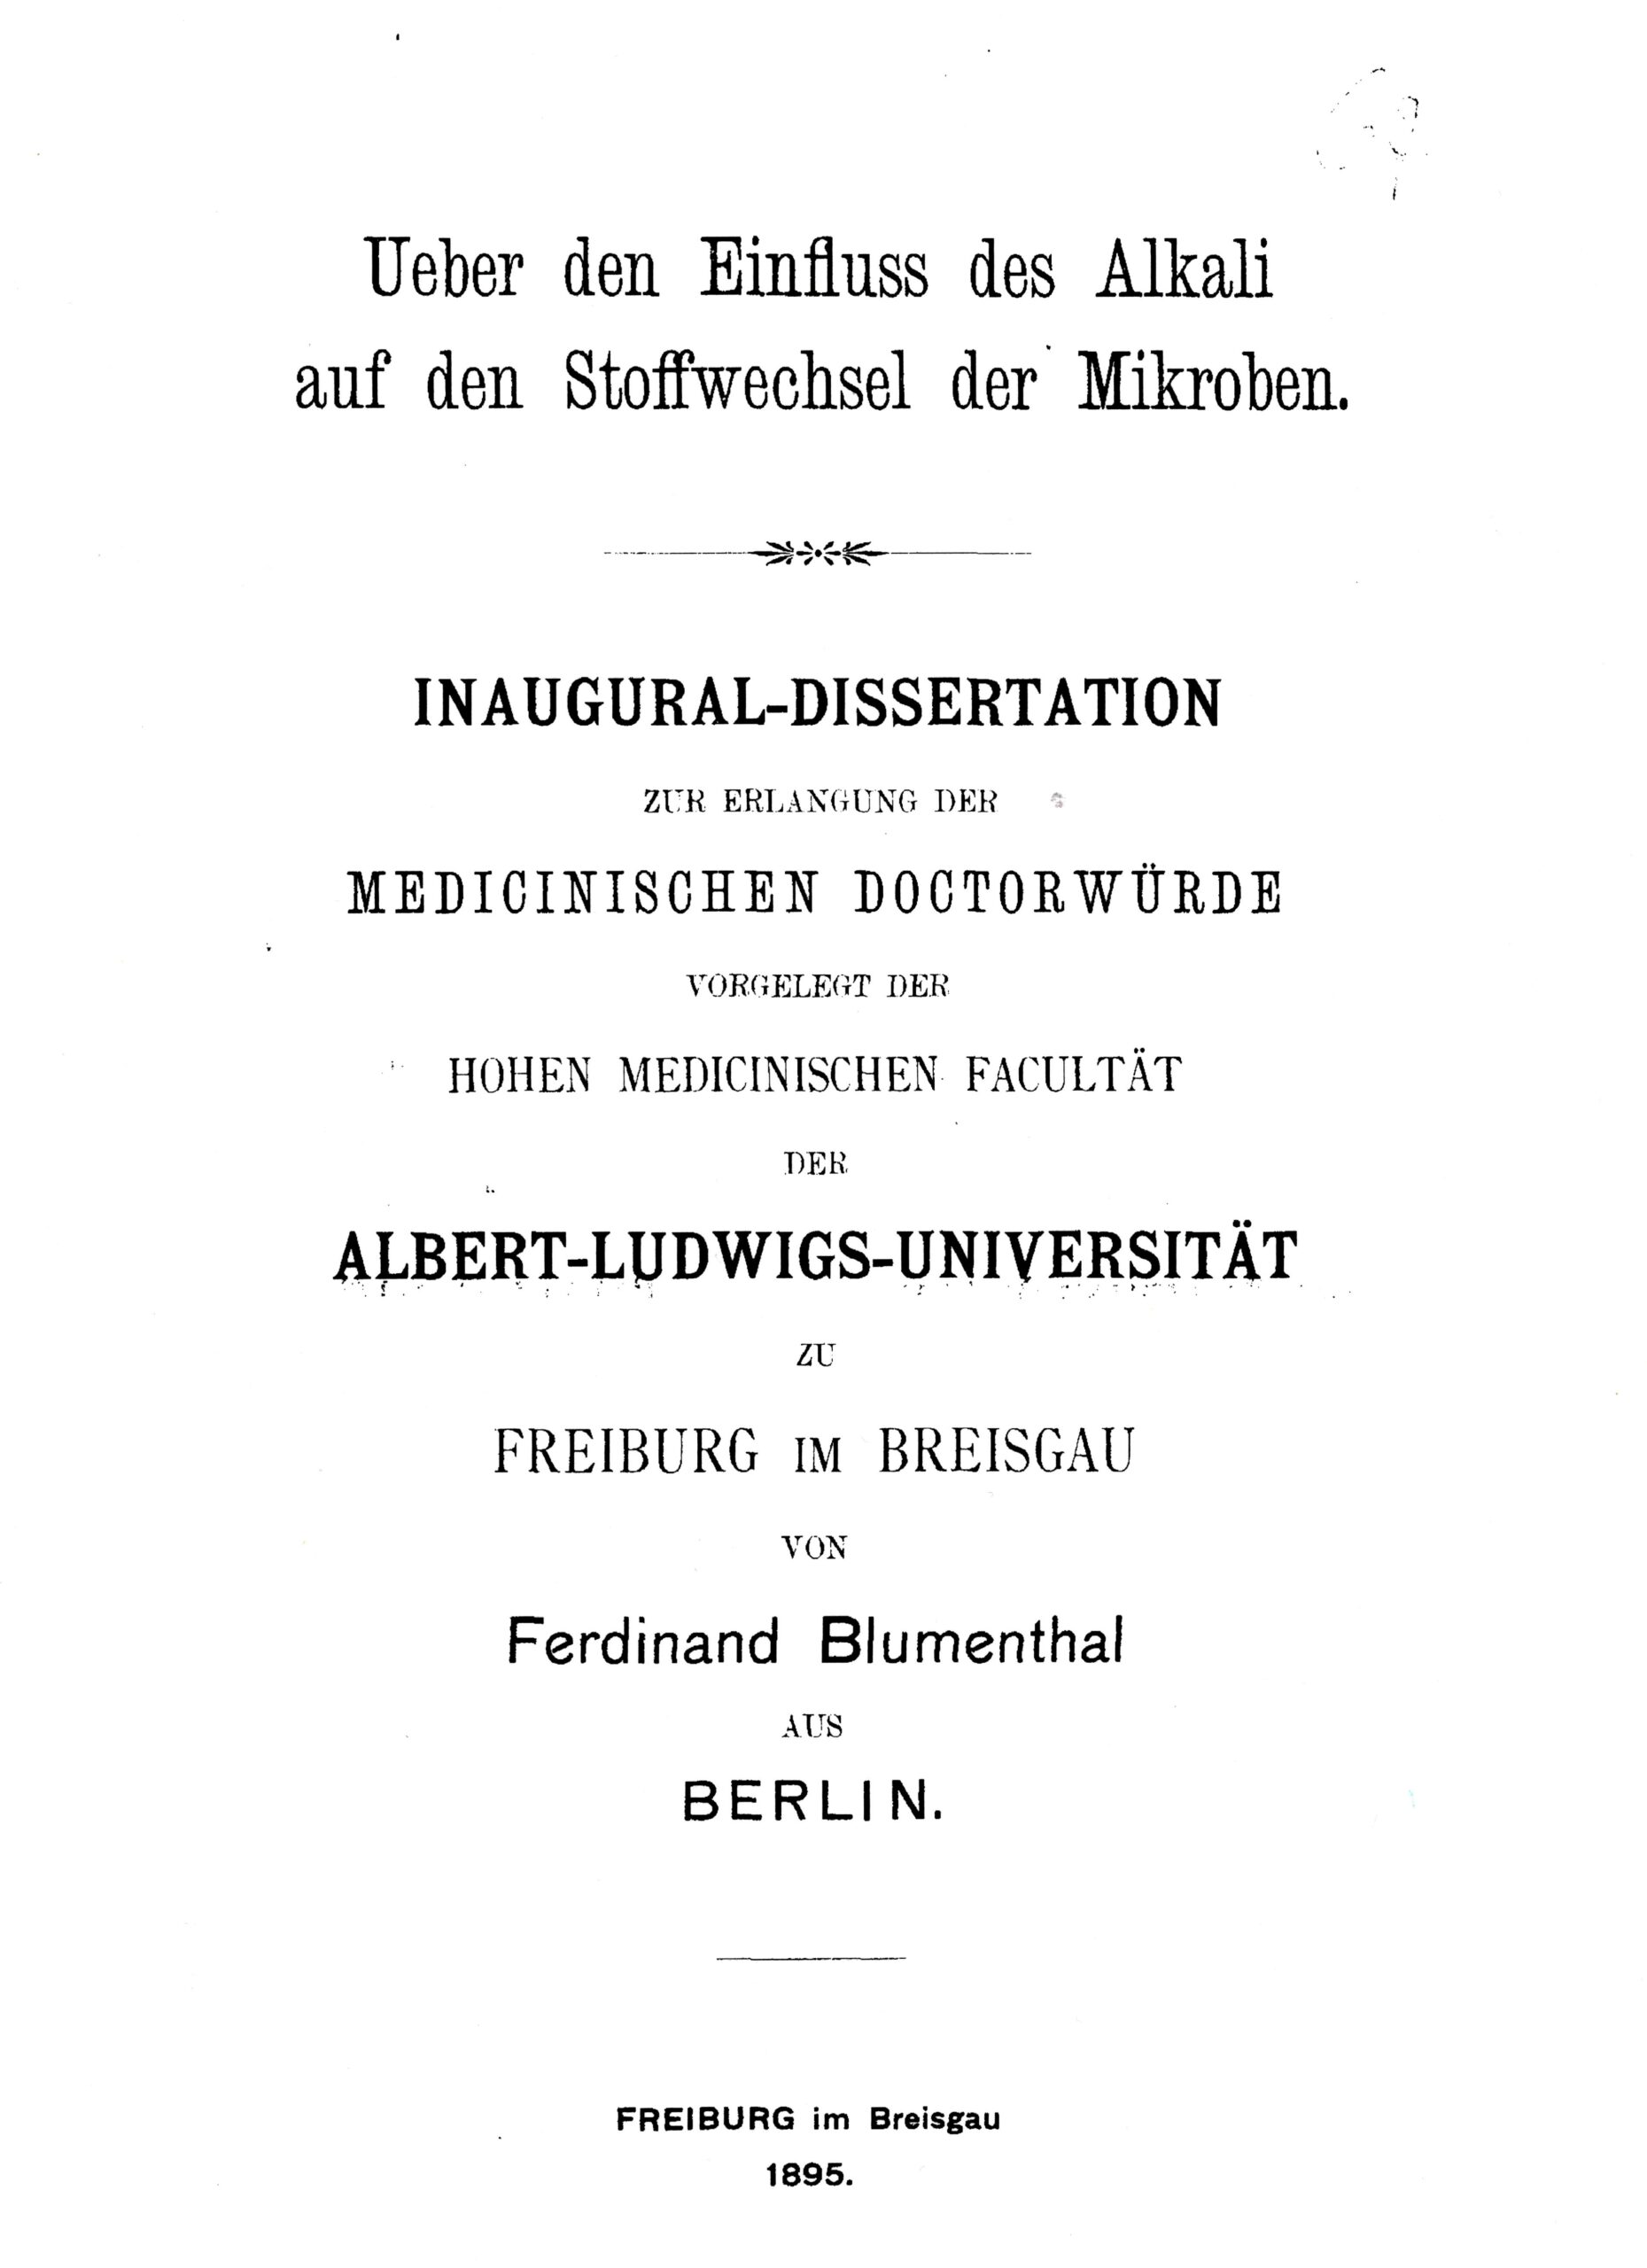 Dissertation, Freiburg 1895